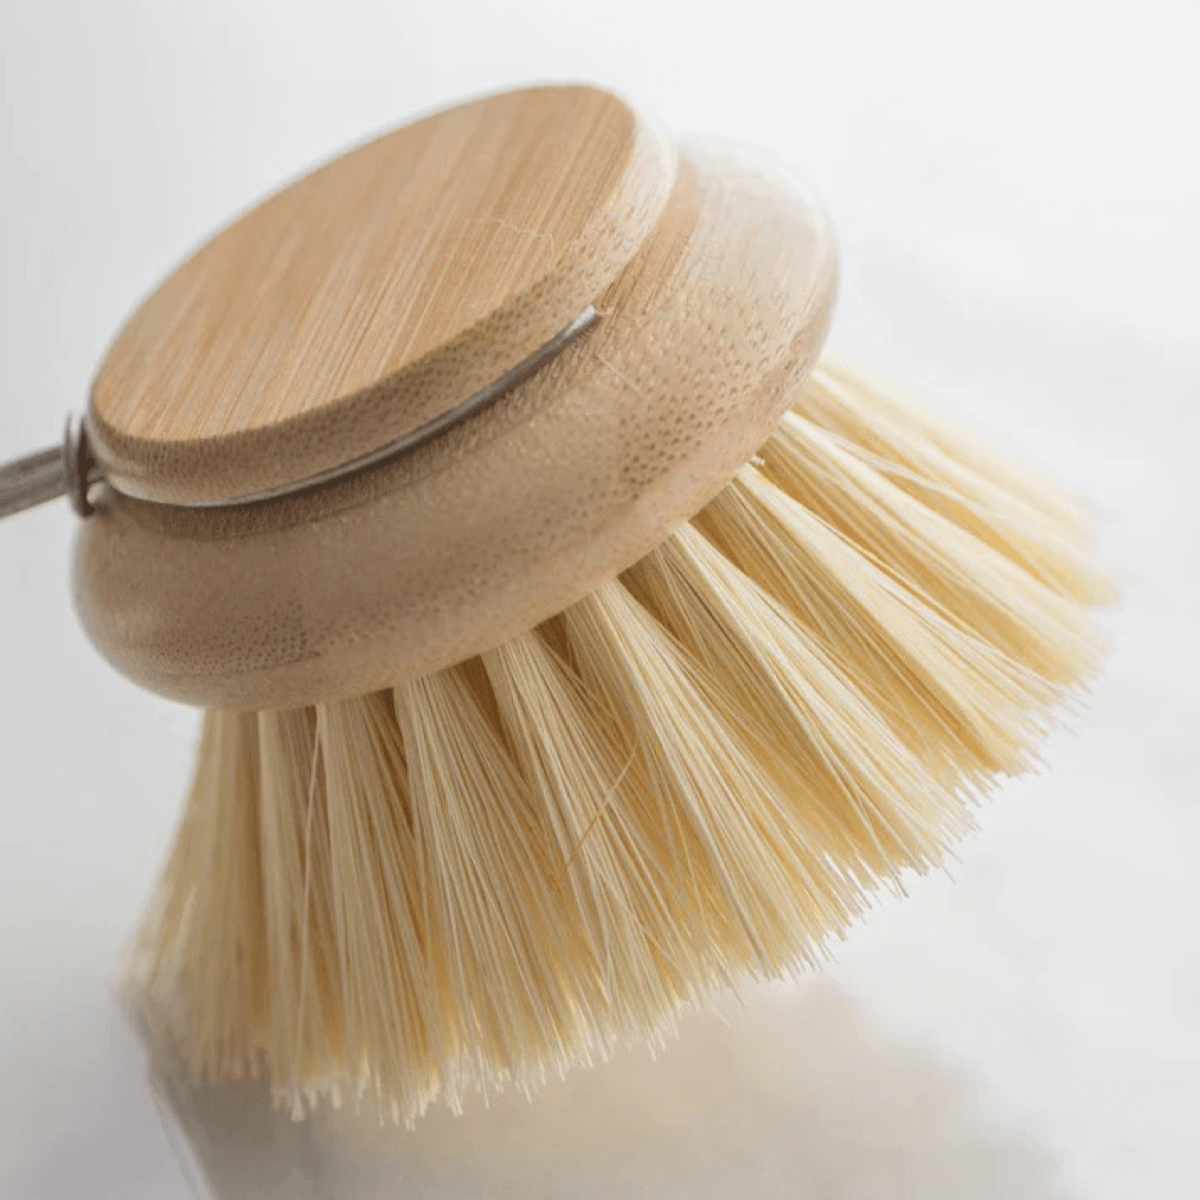 Dish Brush & Replacement Heads – SOLANA